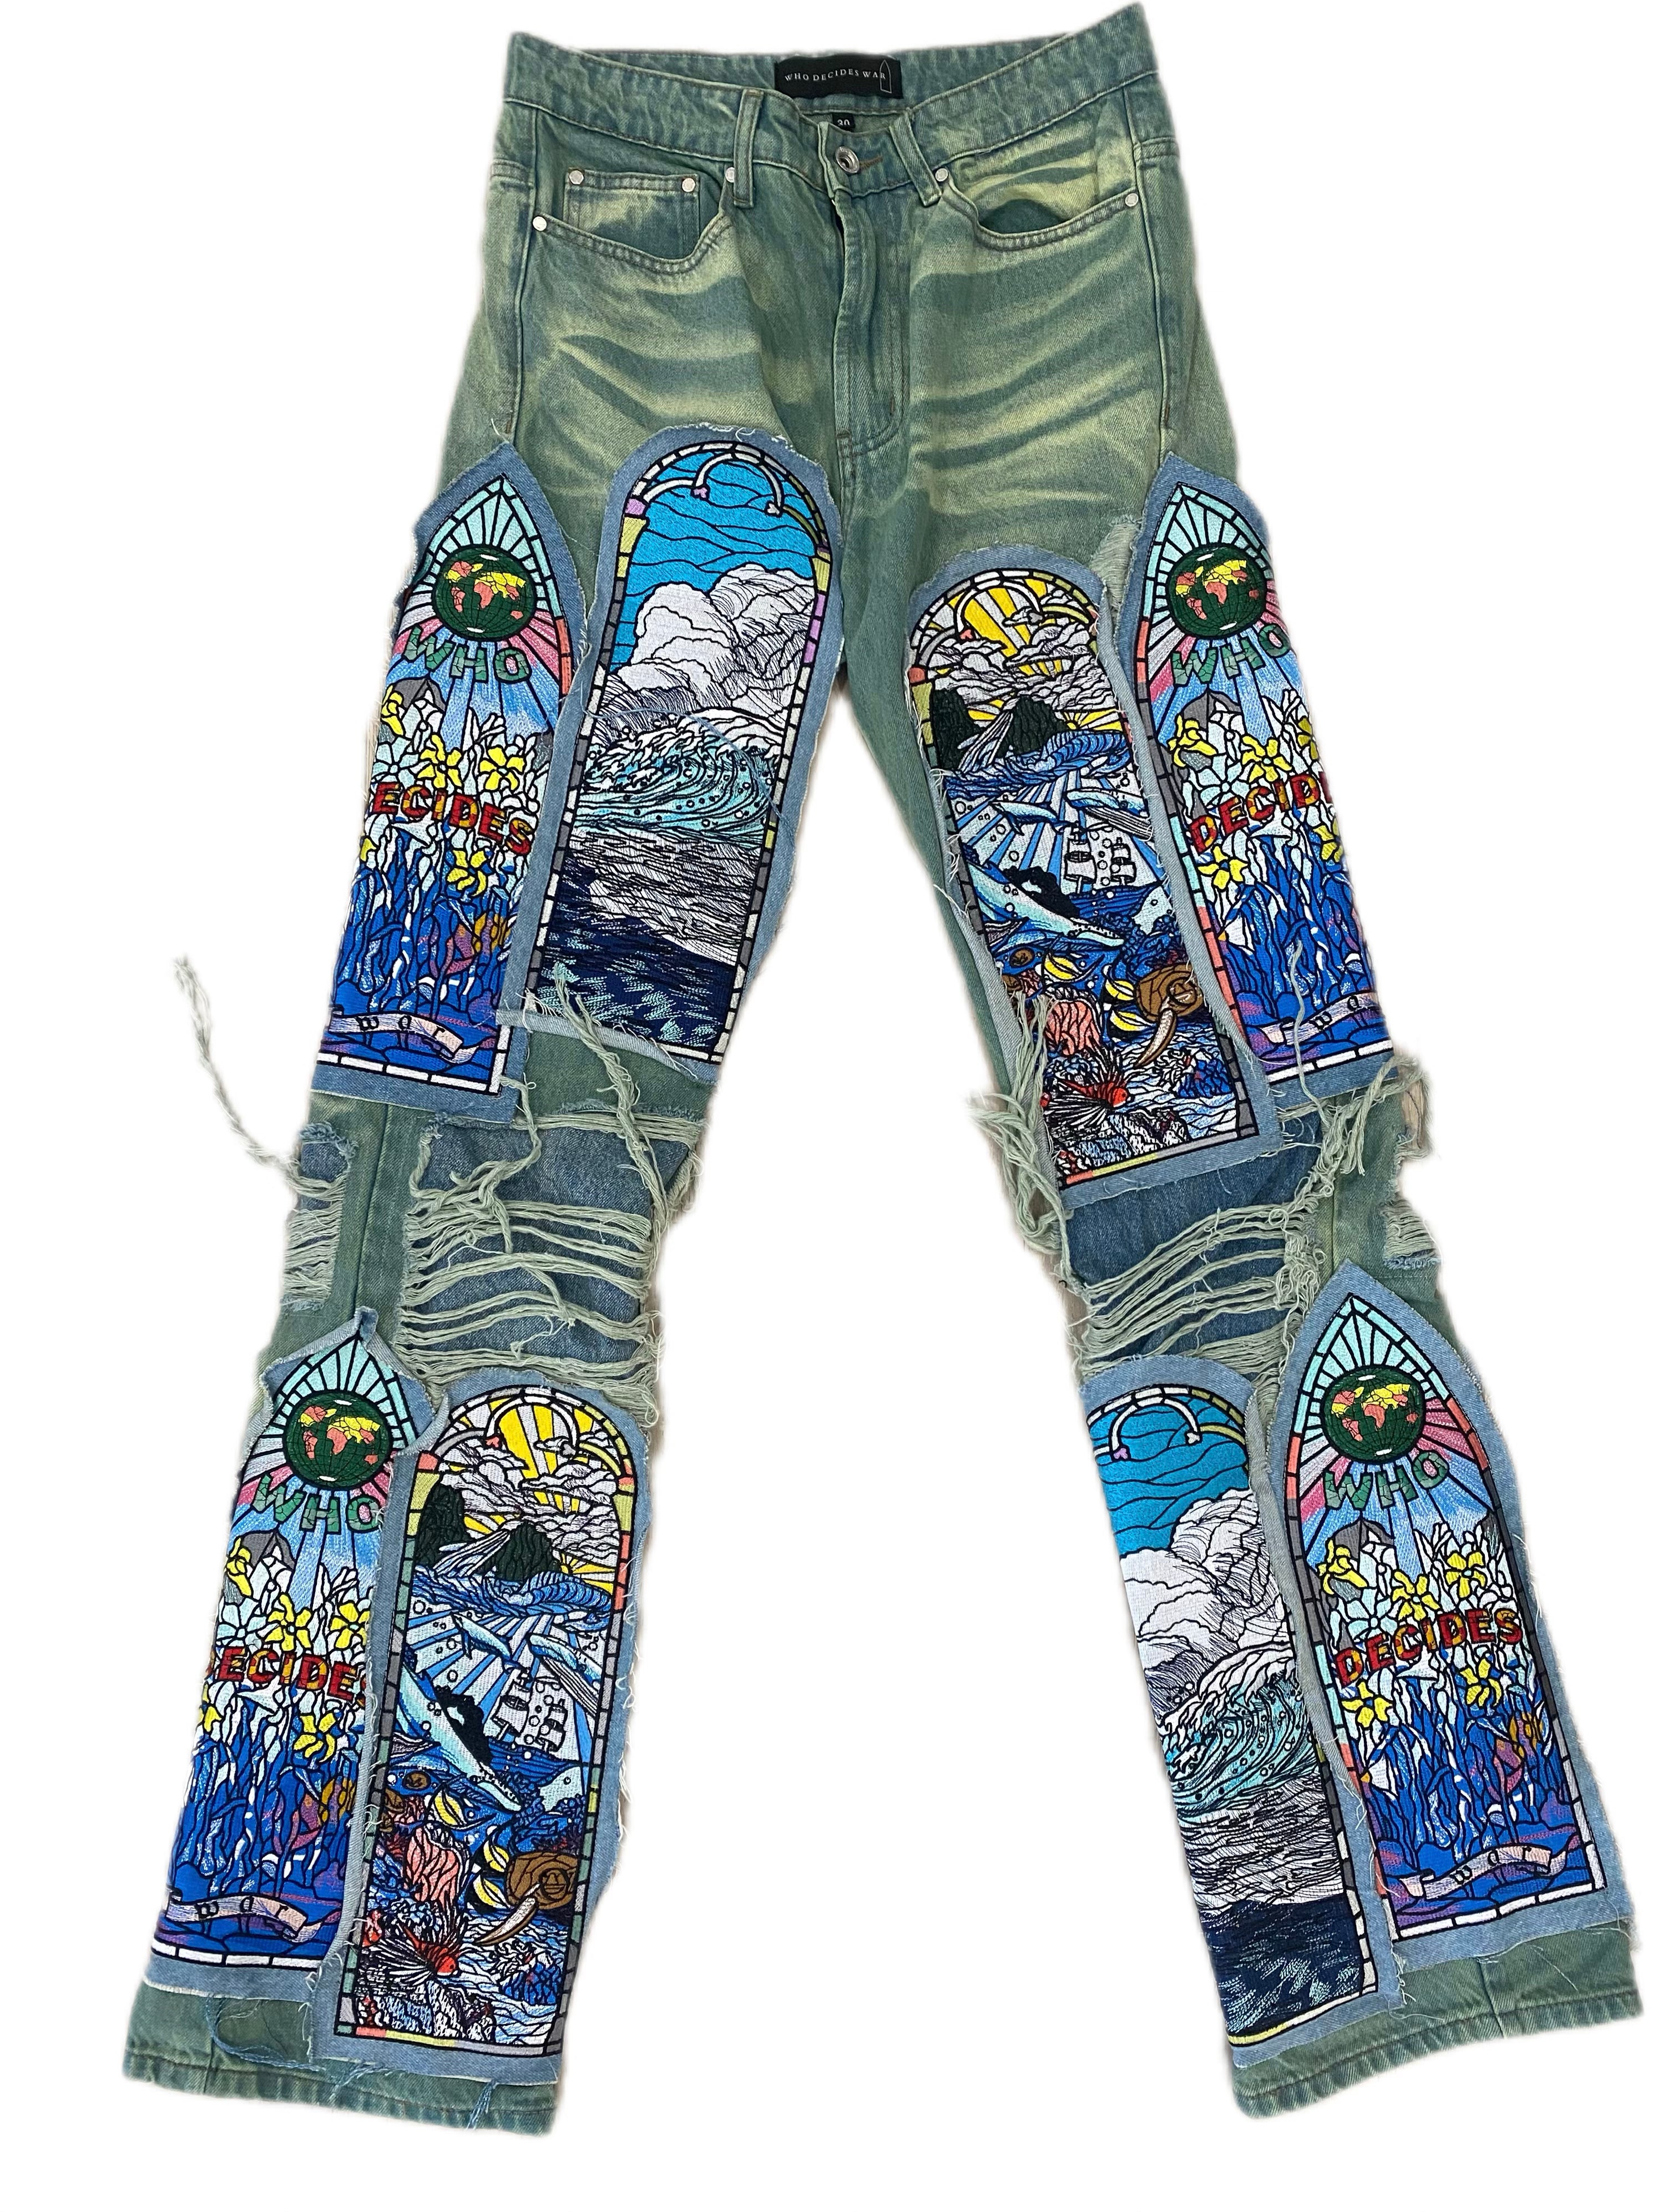 Who Decides War Jeans (Sandy Lane Fusion)